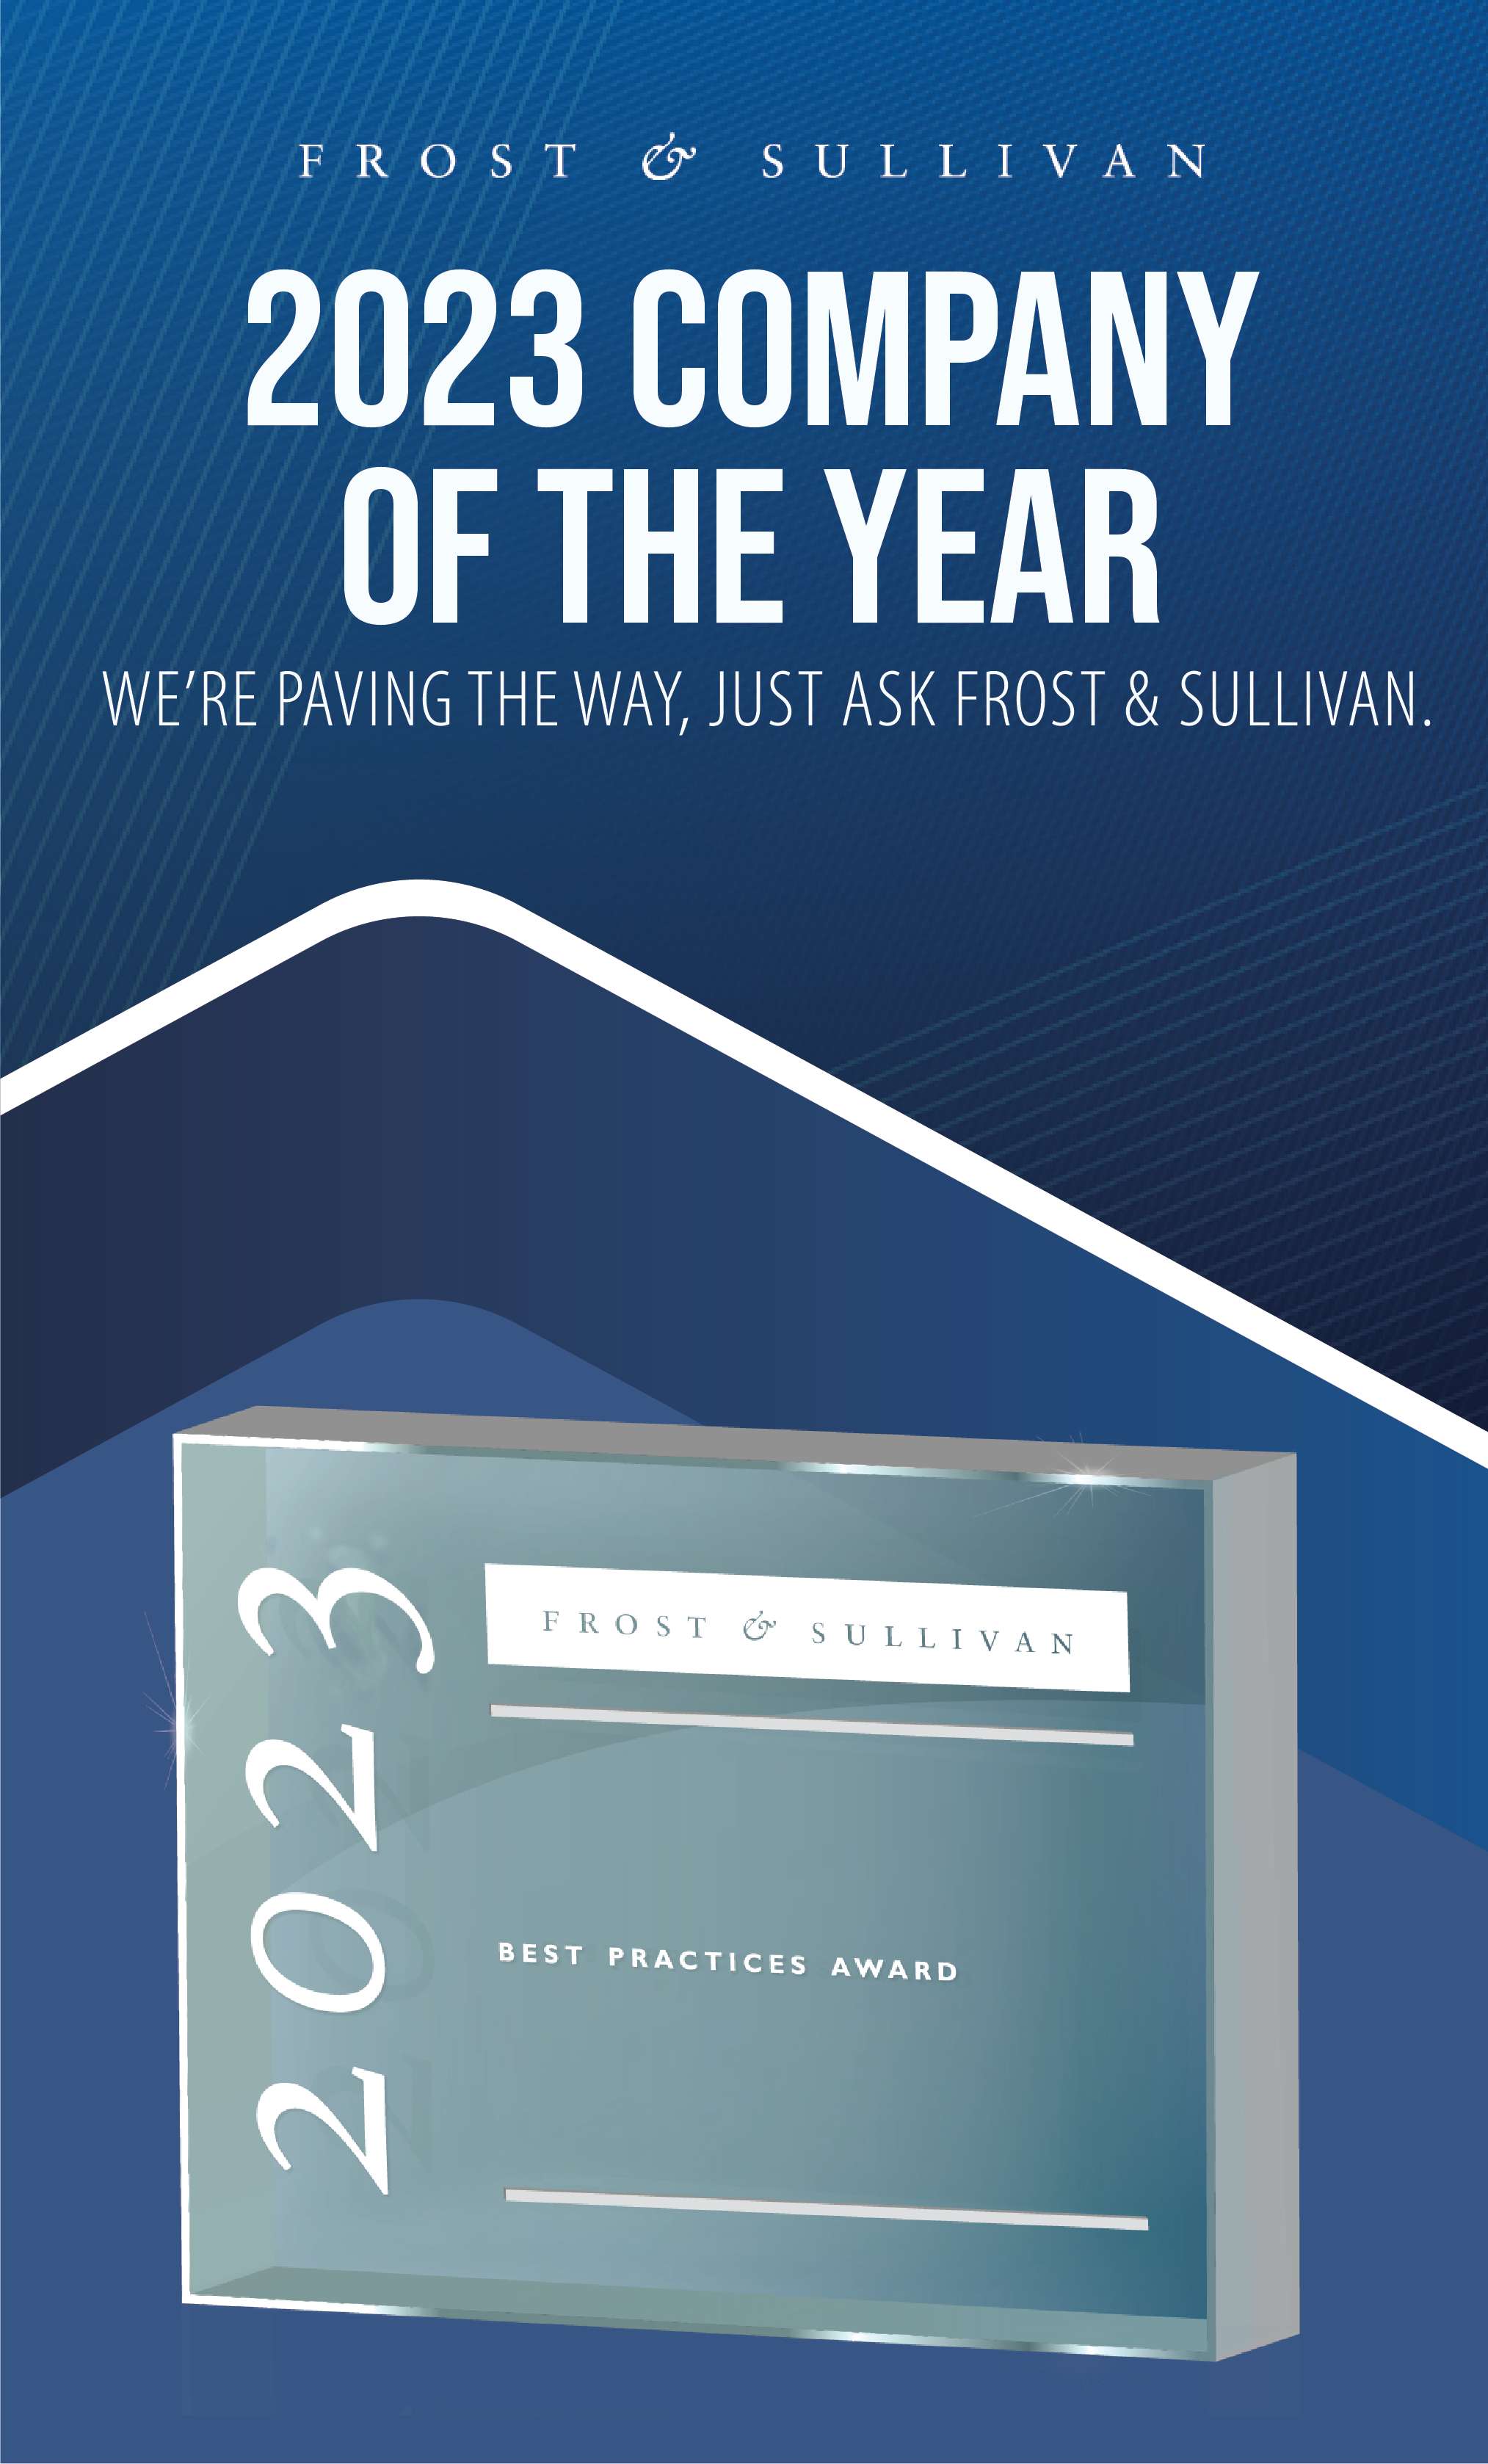 Frost & Sullivan Company of the Year Award 2023 Badge